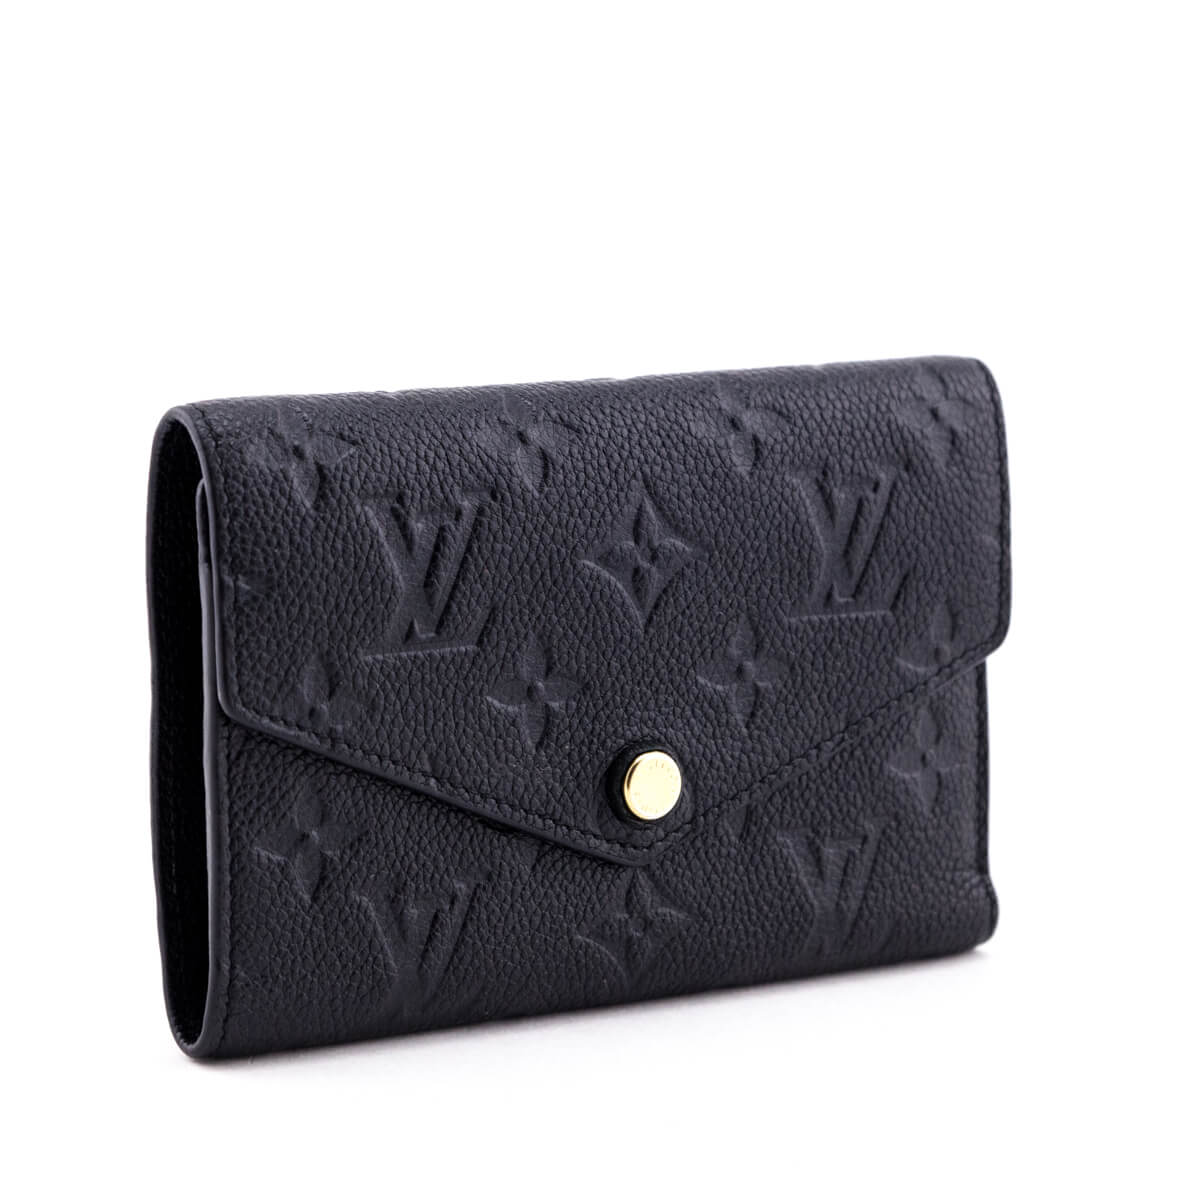 Louis Vuitton Vintage Ombré Monogram Empreinte Secret Leather Compact Wallet, Best Price and Reviews